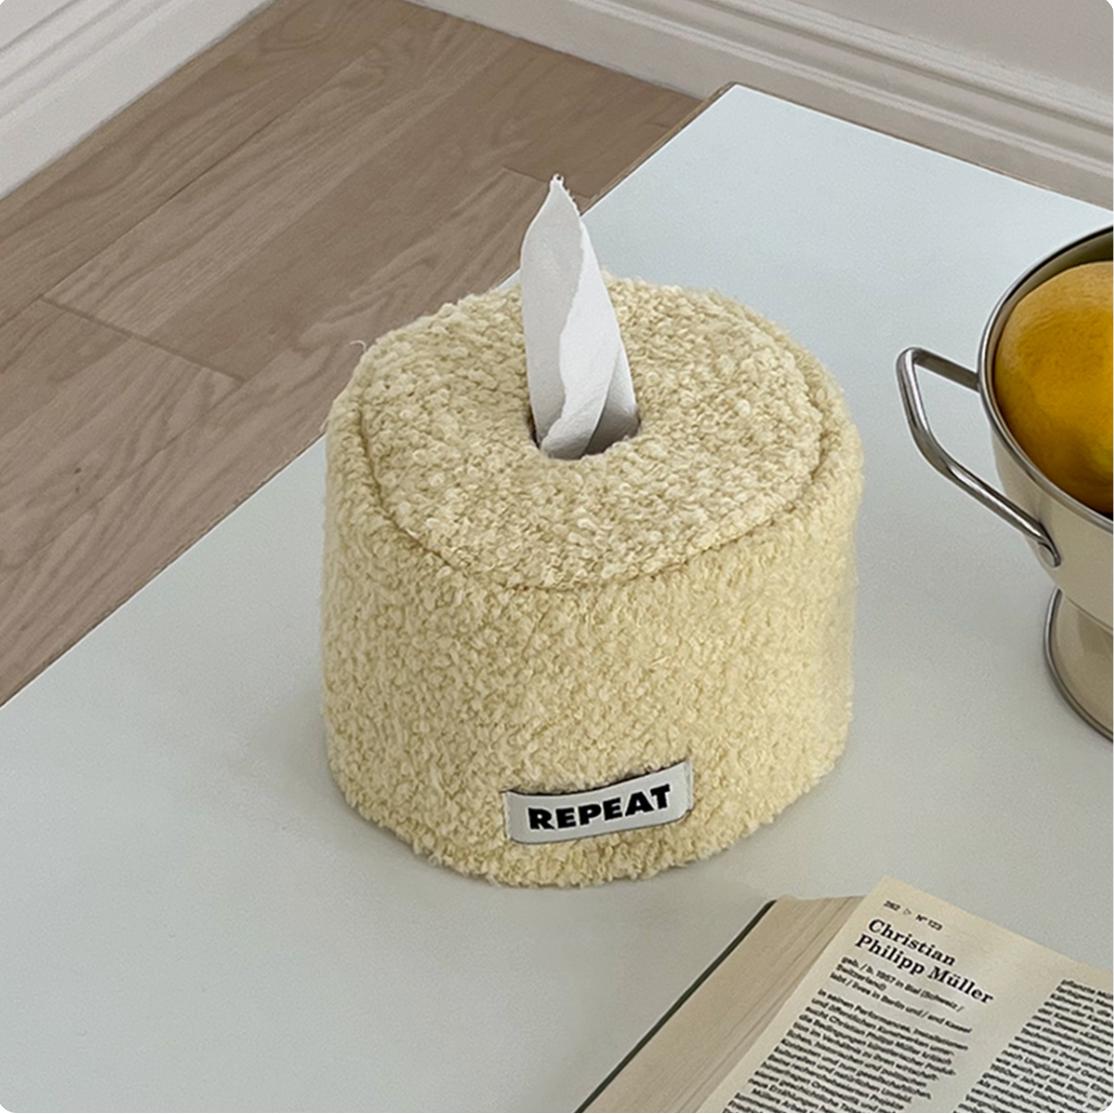 トイレットペーパー カバー | toilet paper case